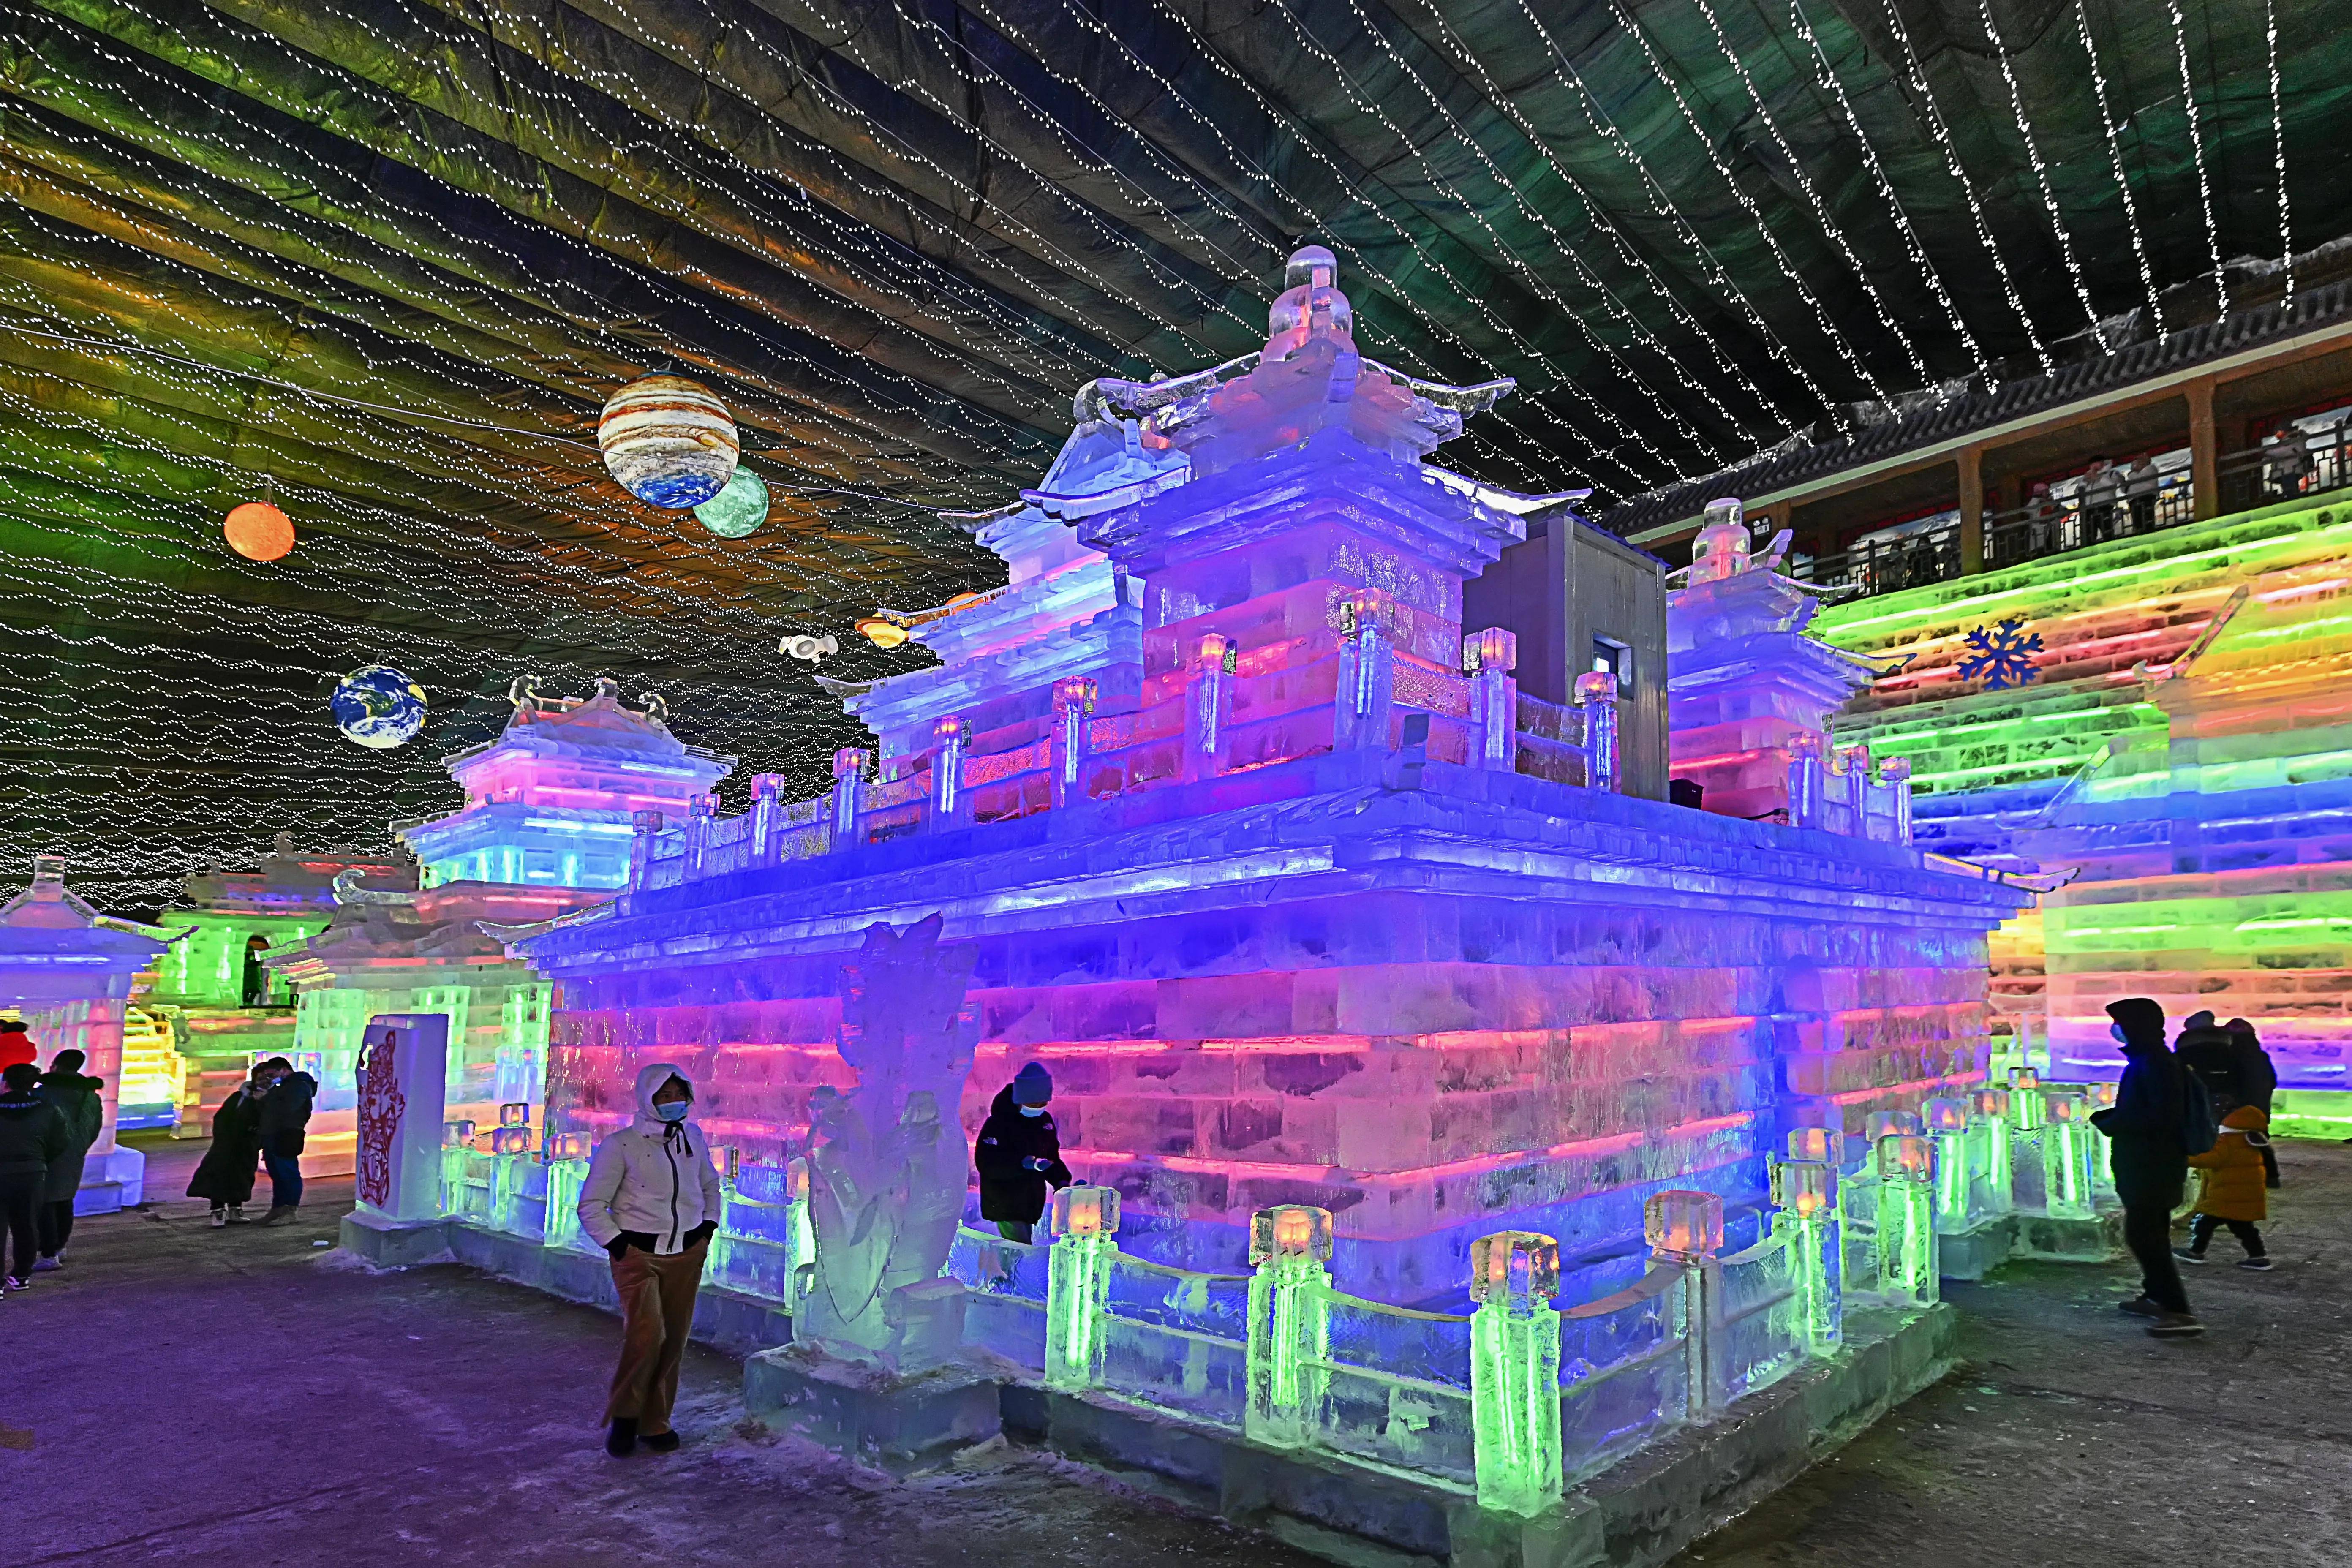 龙庆峡景区冰灯图片